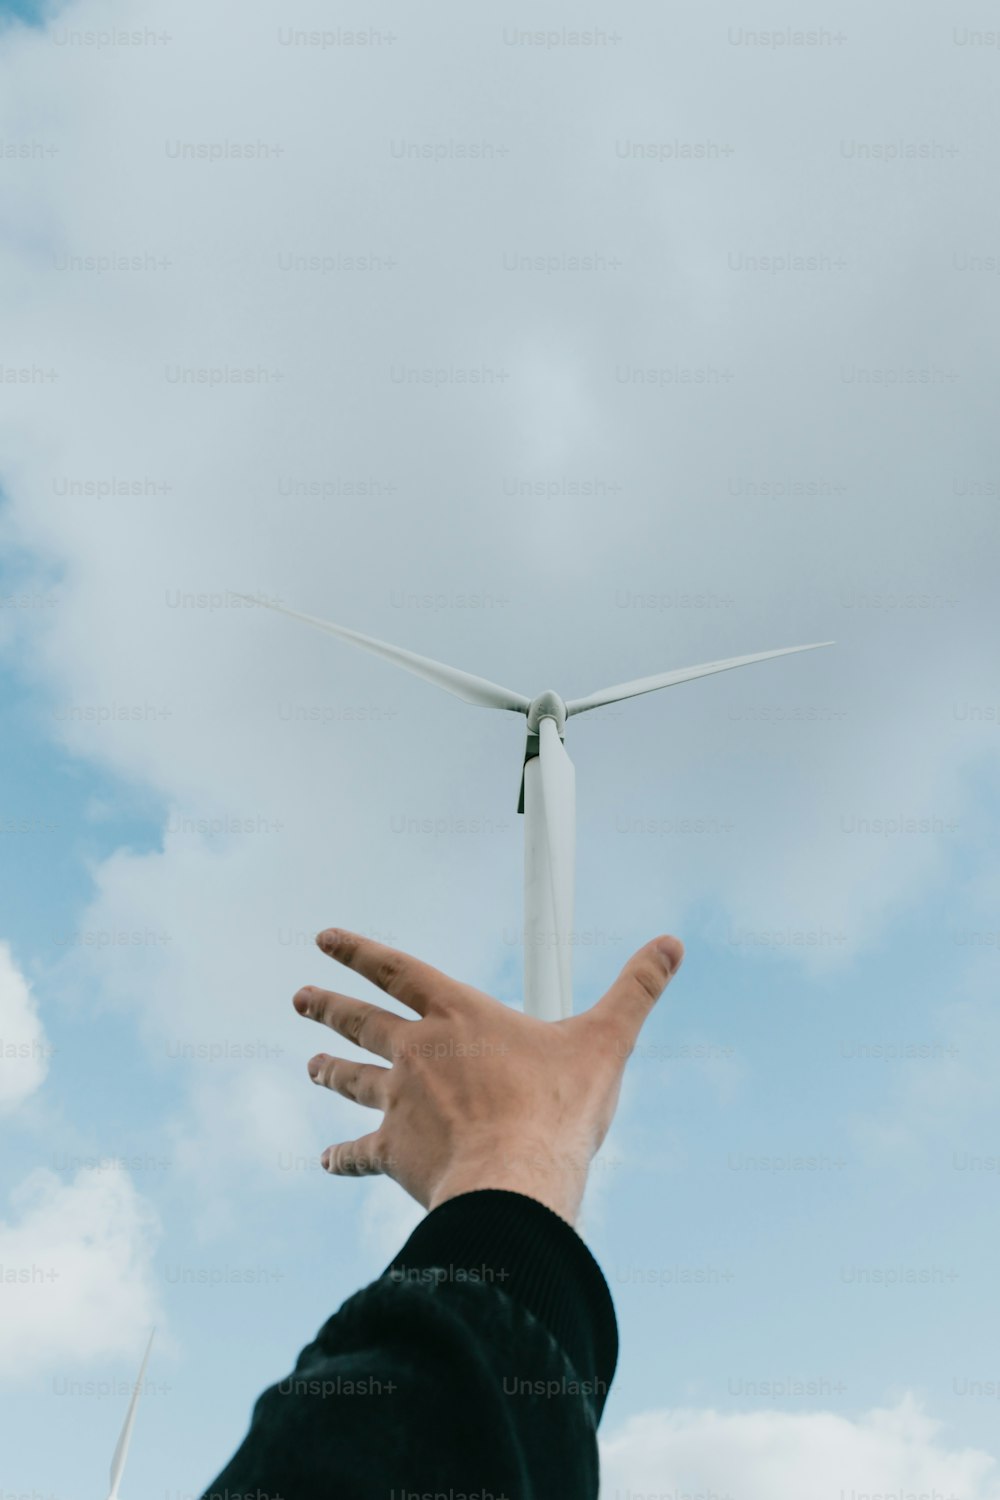 una mano que se extiende hacia una turbina eólica